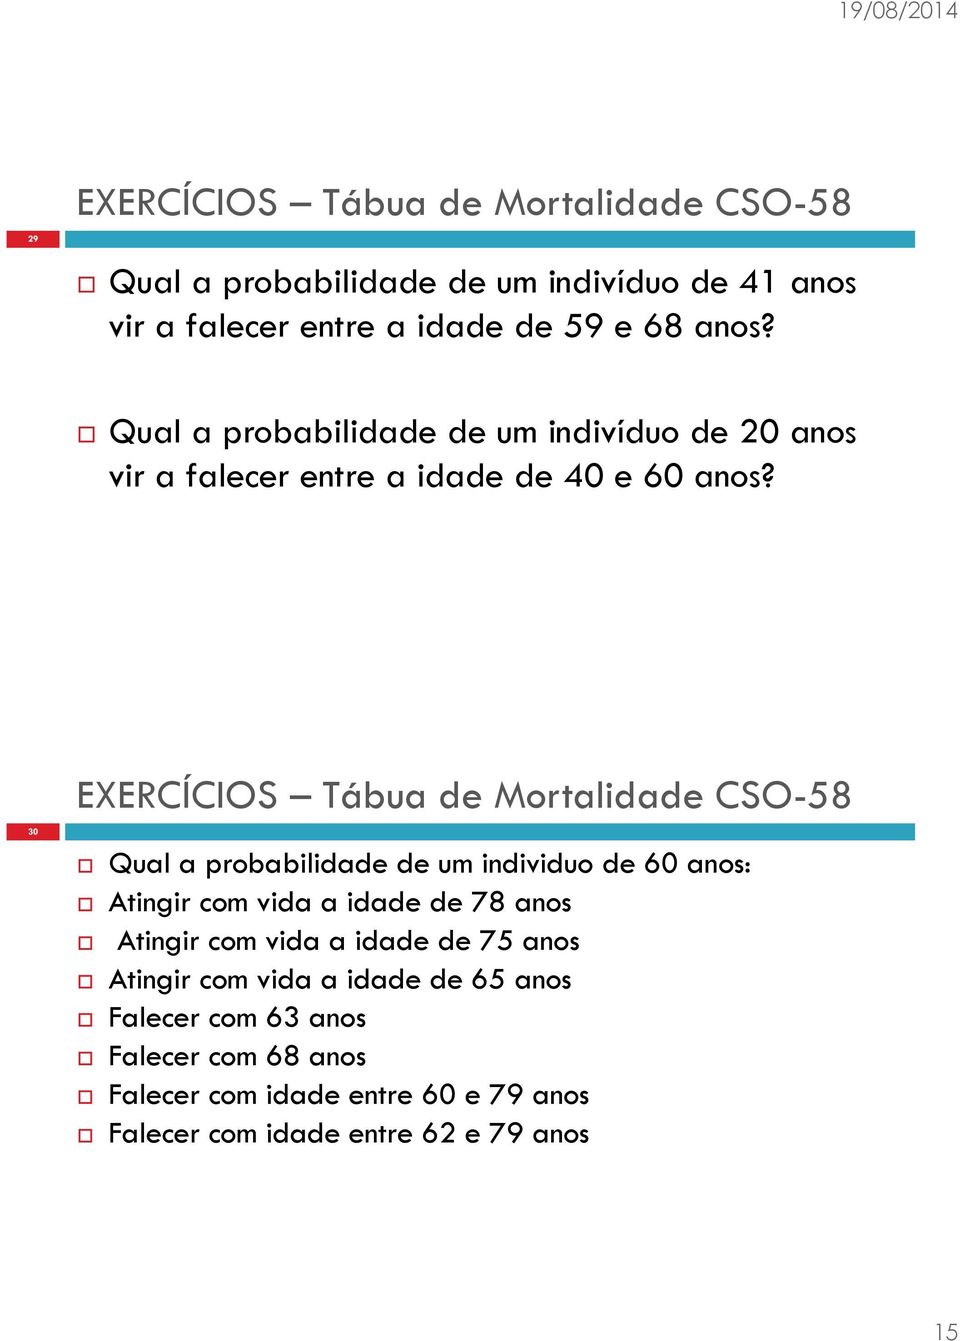 30 EXERCÍCIOS Tábua de Mortalidade CSO-58 Qual a probabilidade de um individuo de 60 anos: Atingir com vida a idade de 78 anos Atingir